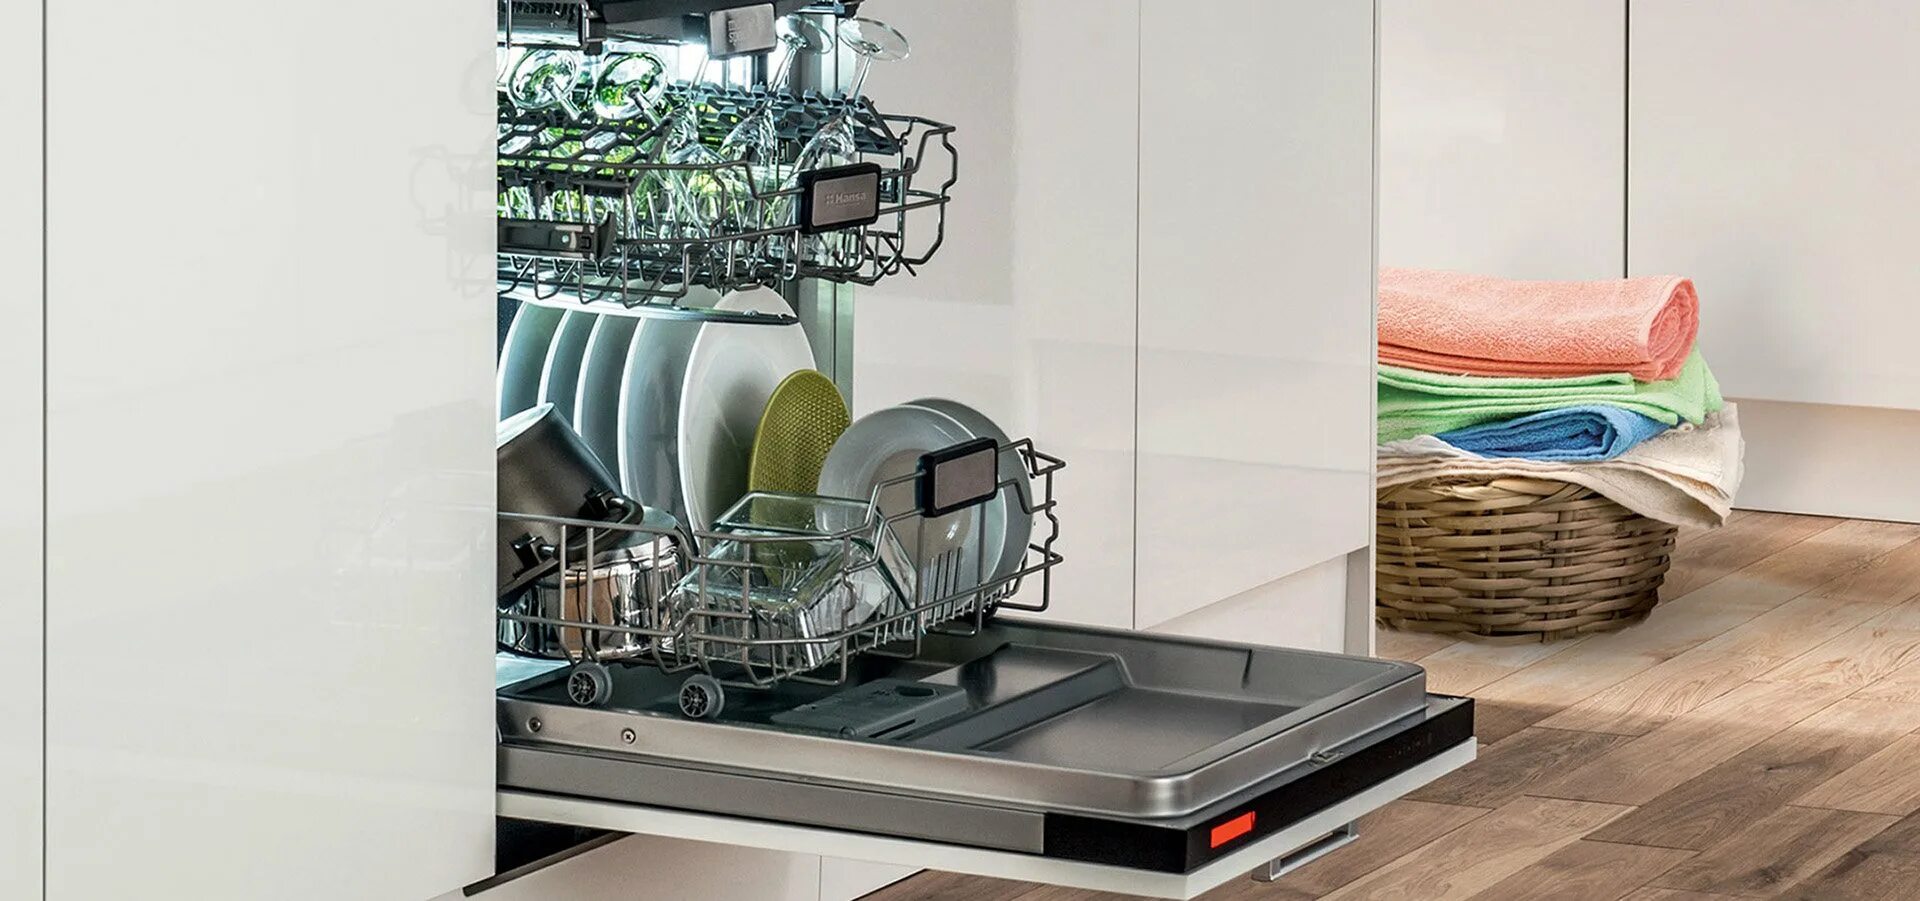 Лучшие посудомоечные машины встраиваемые отзывы. Neff посудомоечная машина 45 встраиваемая. Отдельностоящая посудомоечная машина Bosch SPS 2ikw3cr. Посудомоечная машина Kuppersbusch g 4800.1 v. Посудомоечная машина Ханса.